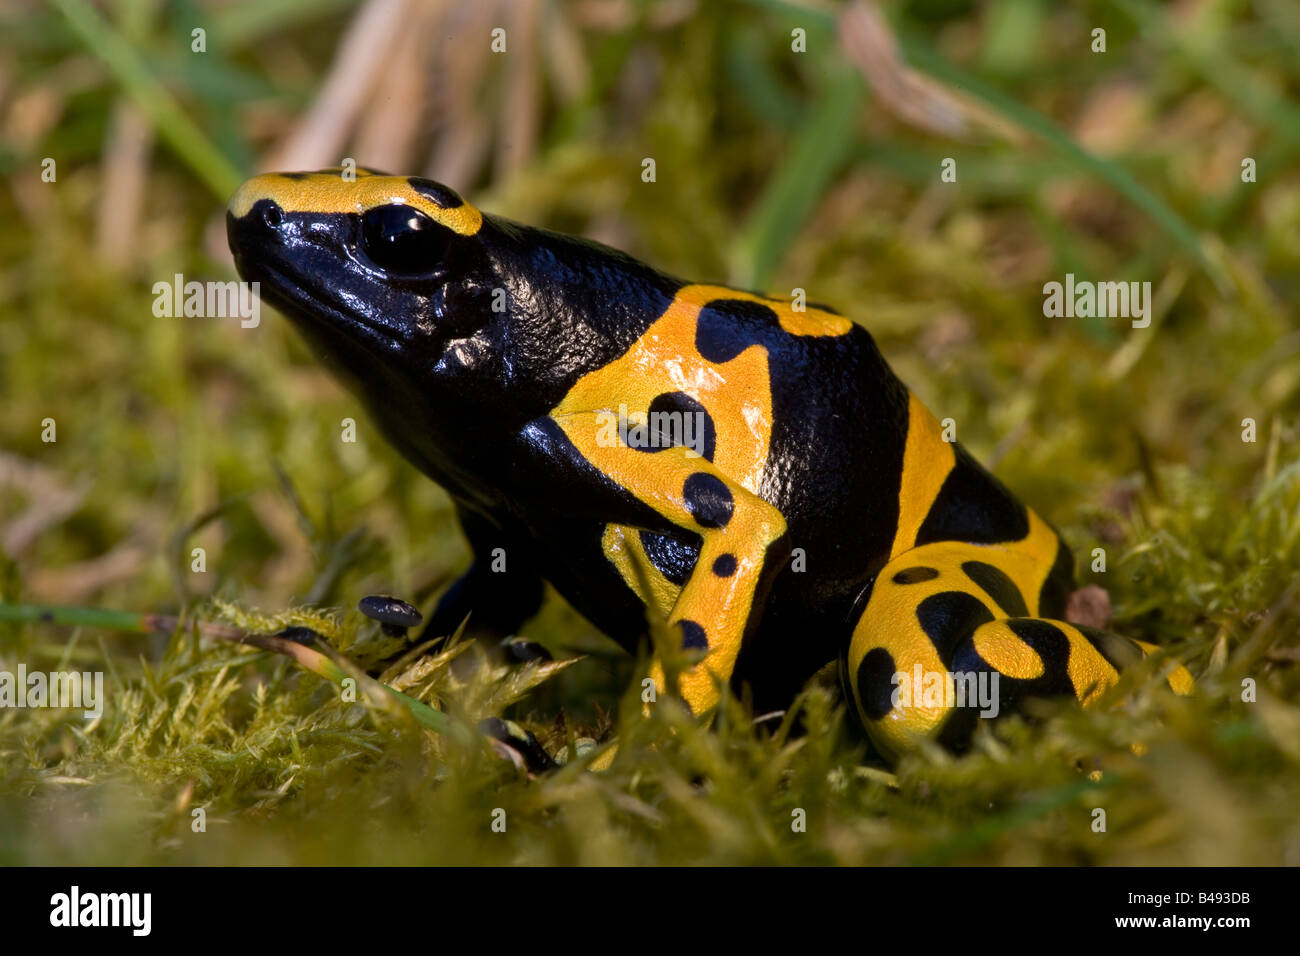 Jaune et Noir Poison Arrow Frog (Dendrobates leucomelas) - Originaire de l'Amérique du Sud Banque D'Images